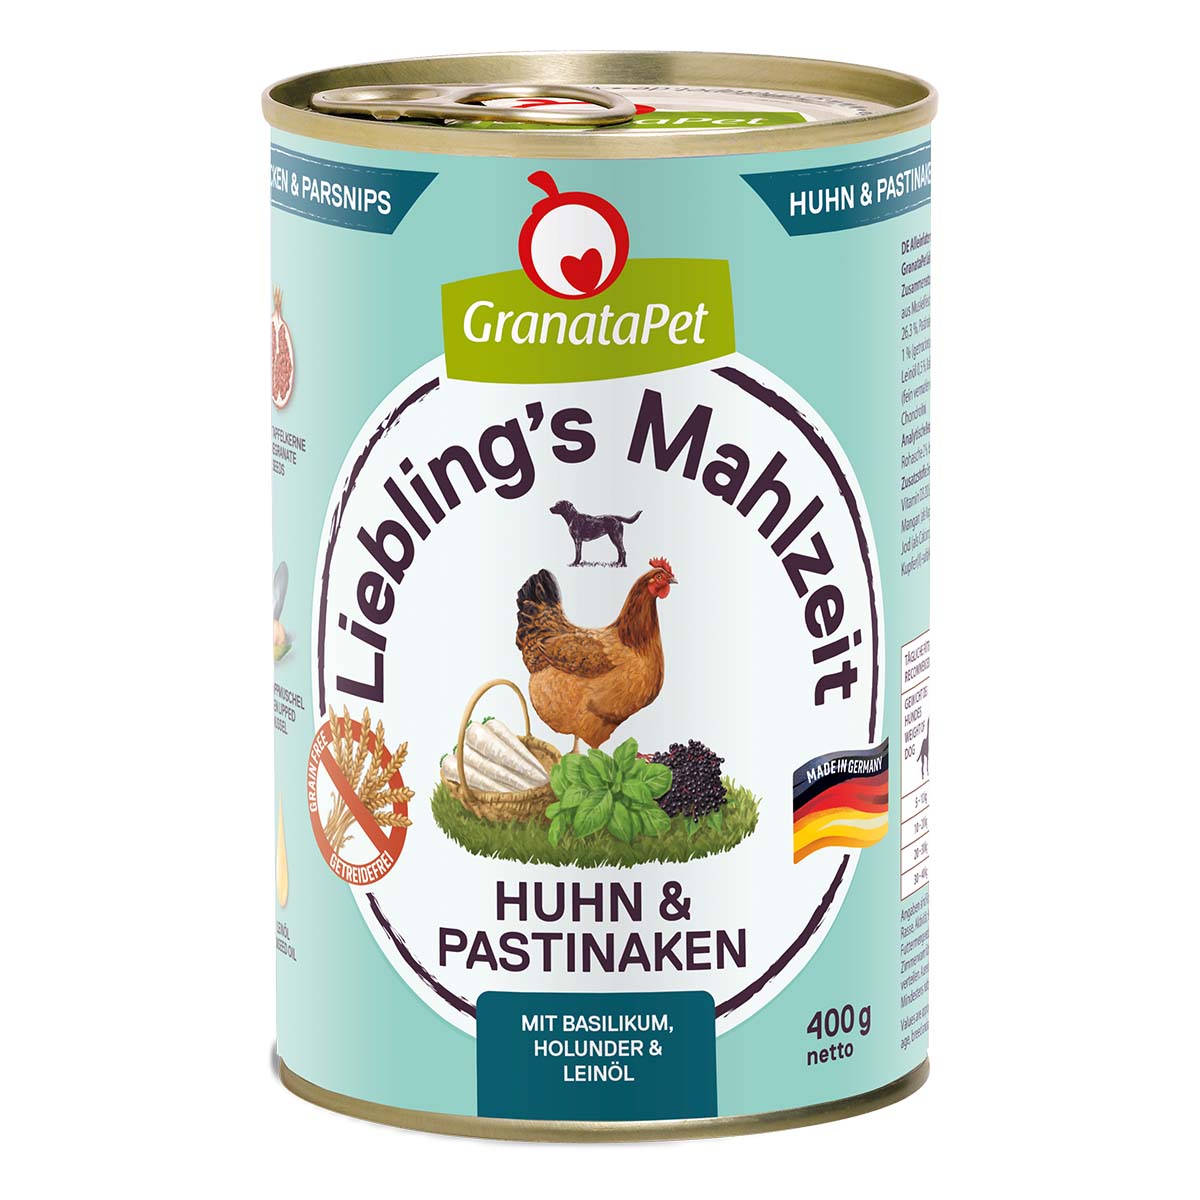 GranataPet Liebling's Mahlzeit Huhn und Pastinaken 6x400g